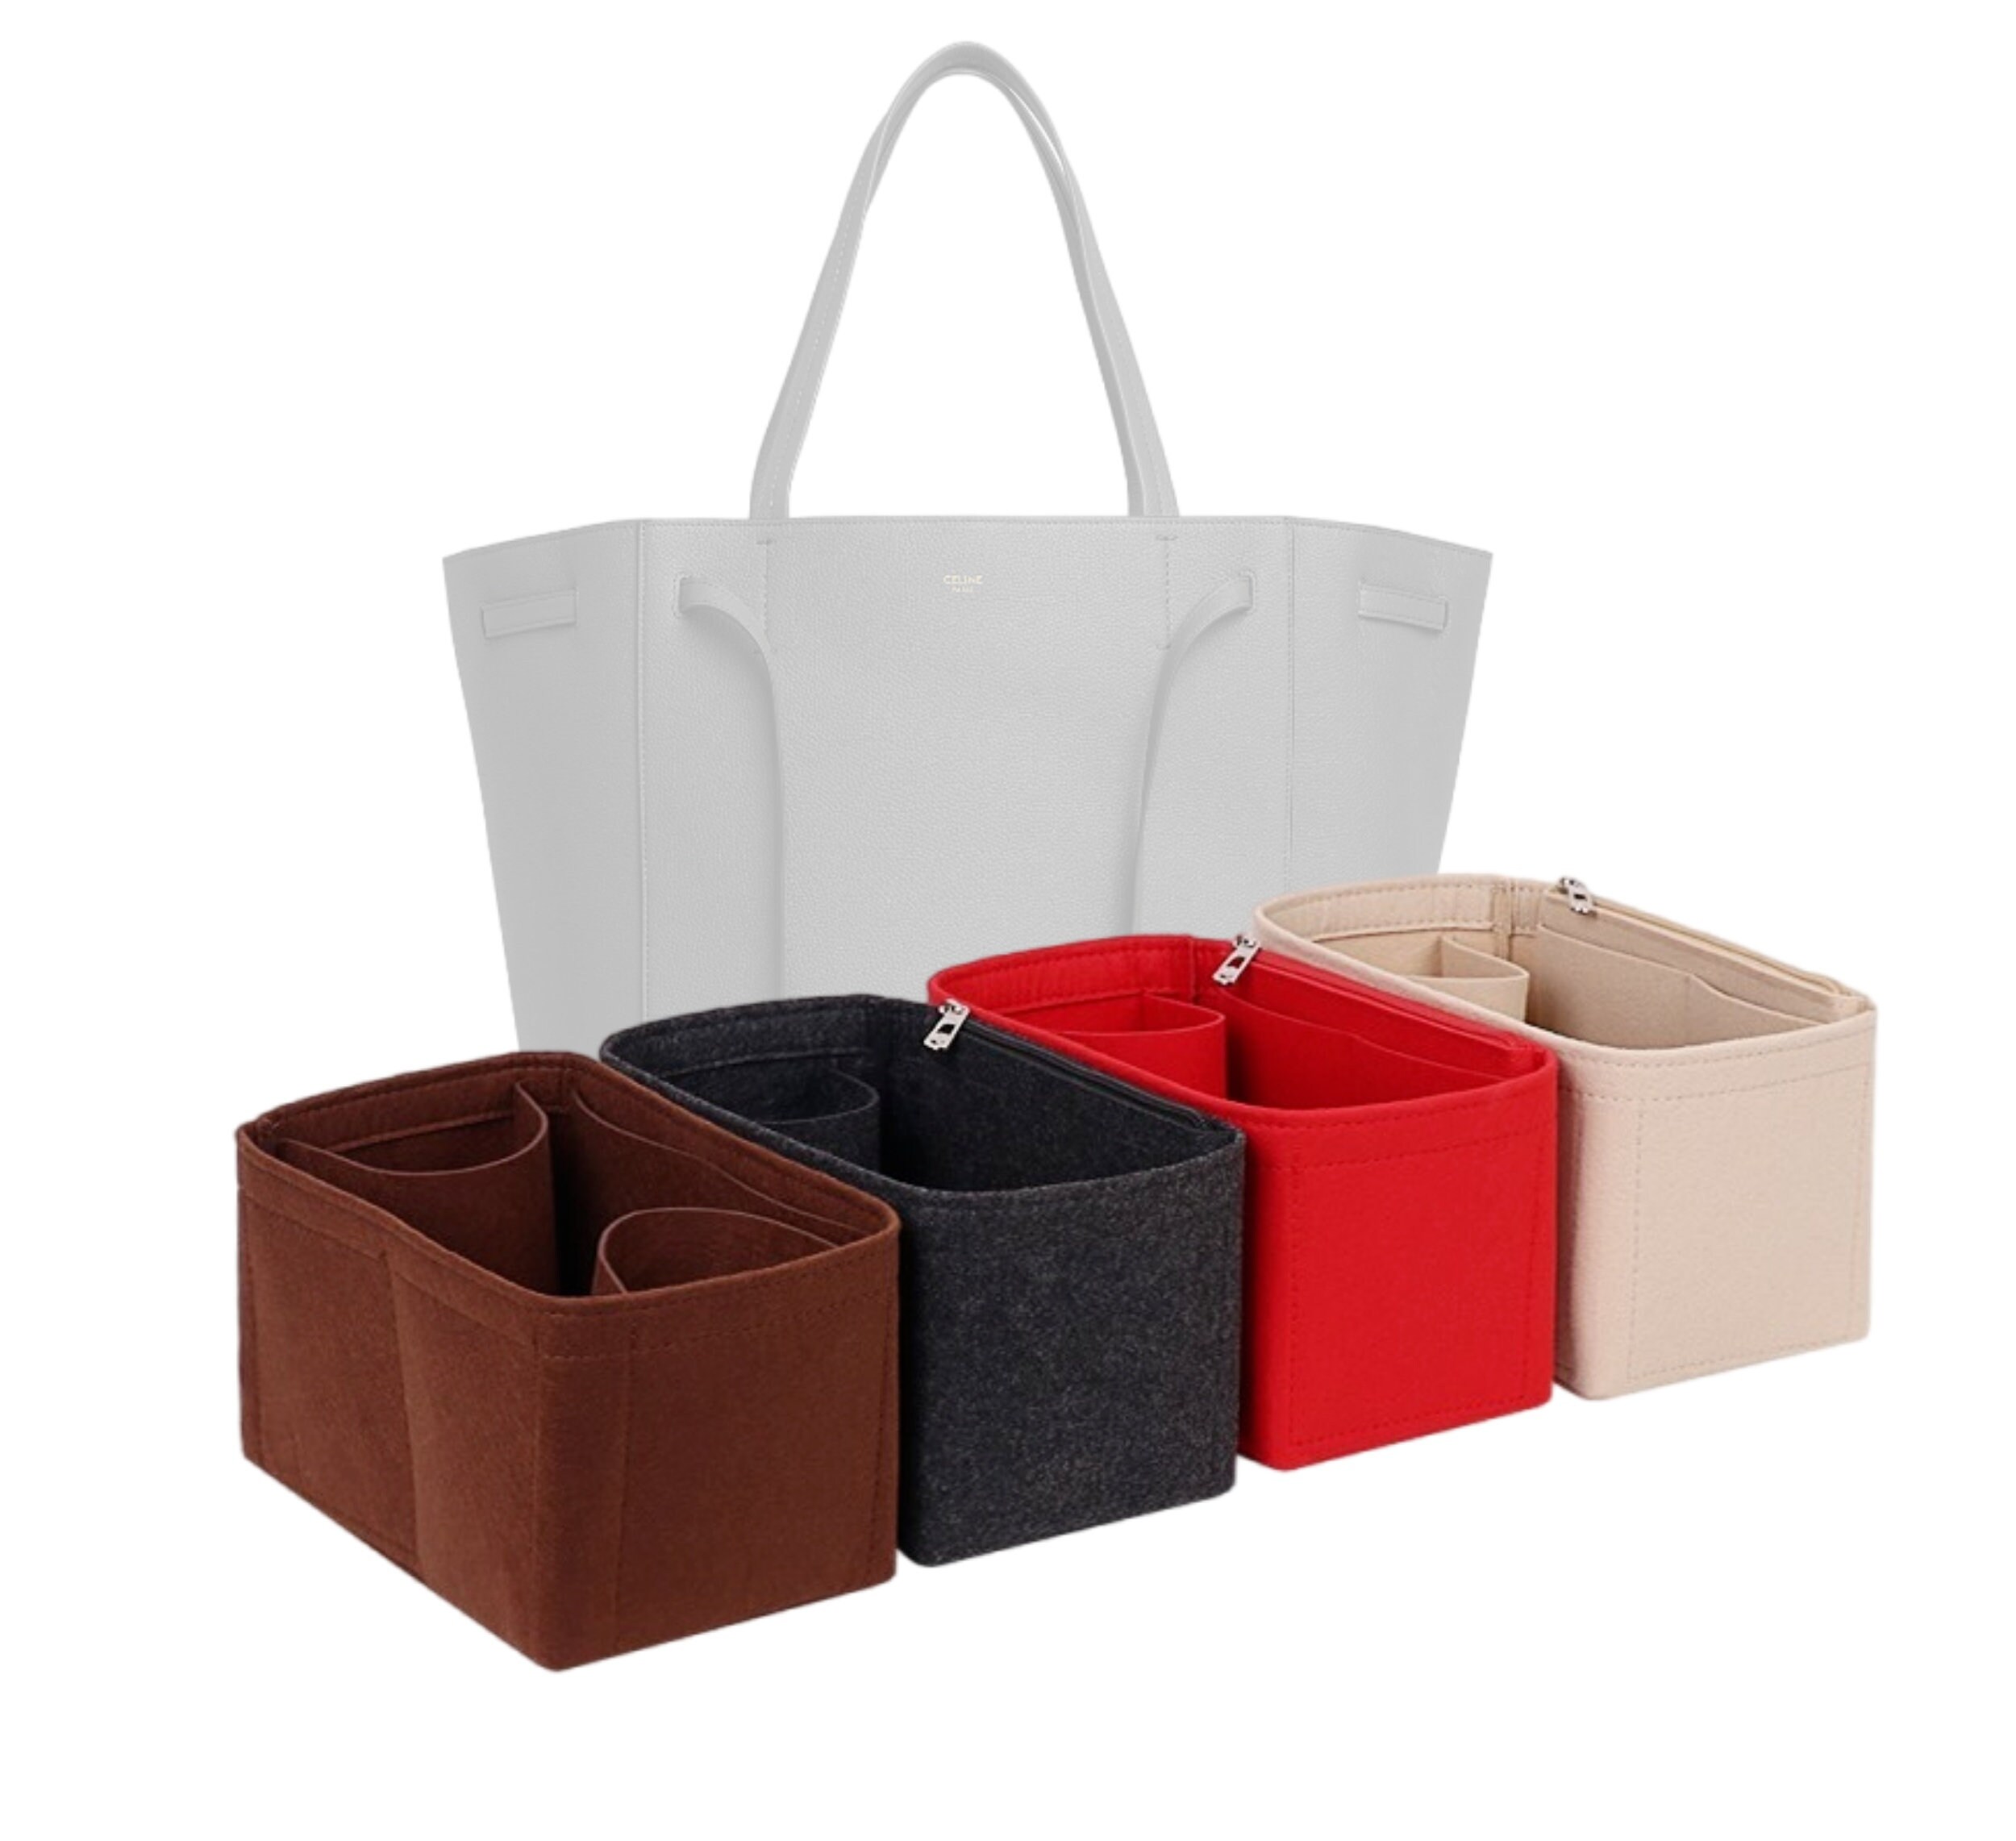 (4-14/ C-Cabas-S1) Bag Organizer for Small Cabas Bag